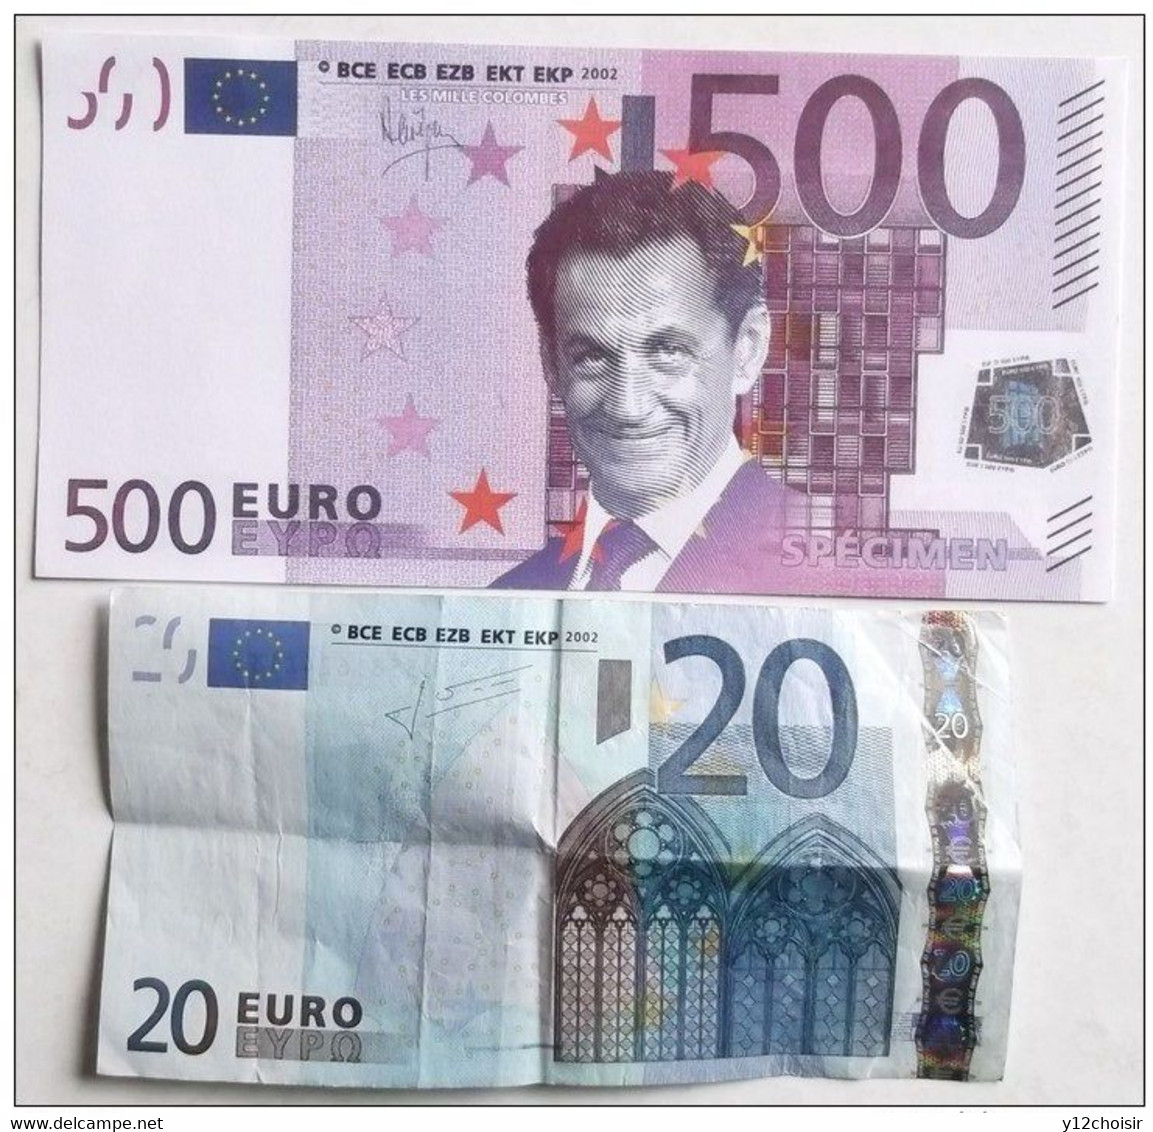 Argent fictif euros